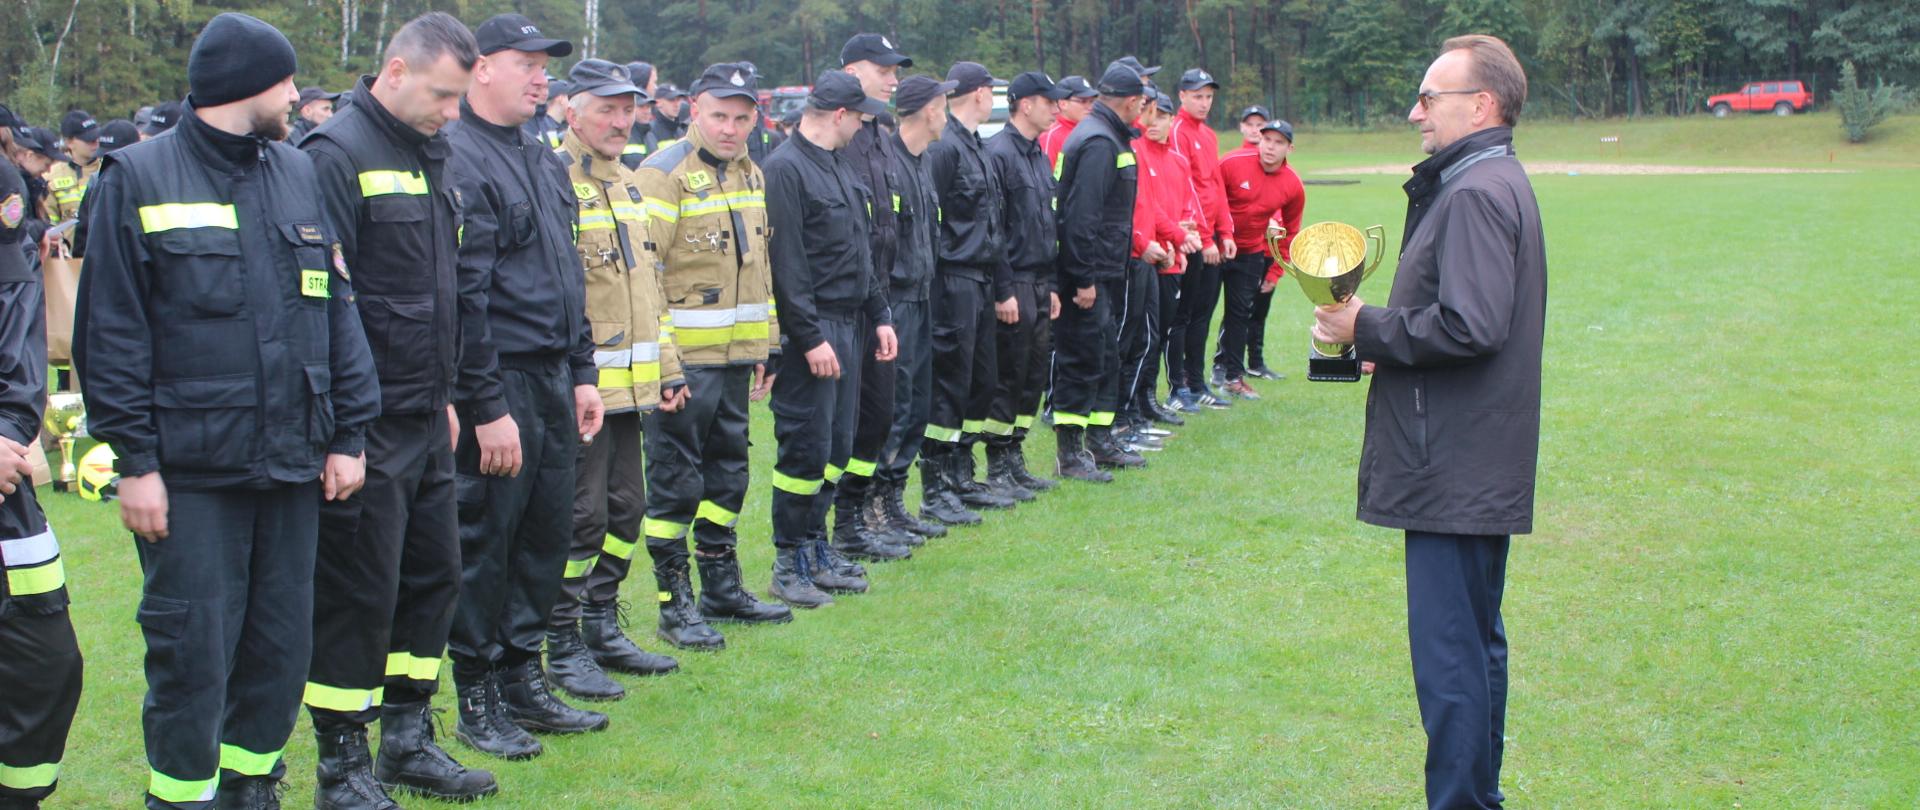 Wicestarosta Piotr Bożko wręcza puchar zwycięzcom XII. Powiatowych Zawodów Sportowo-Pożarniczych Ochotniczych Straży Pożarnych